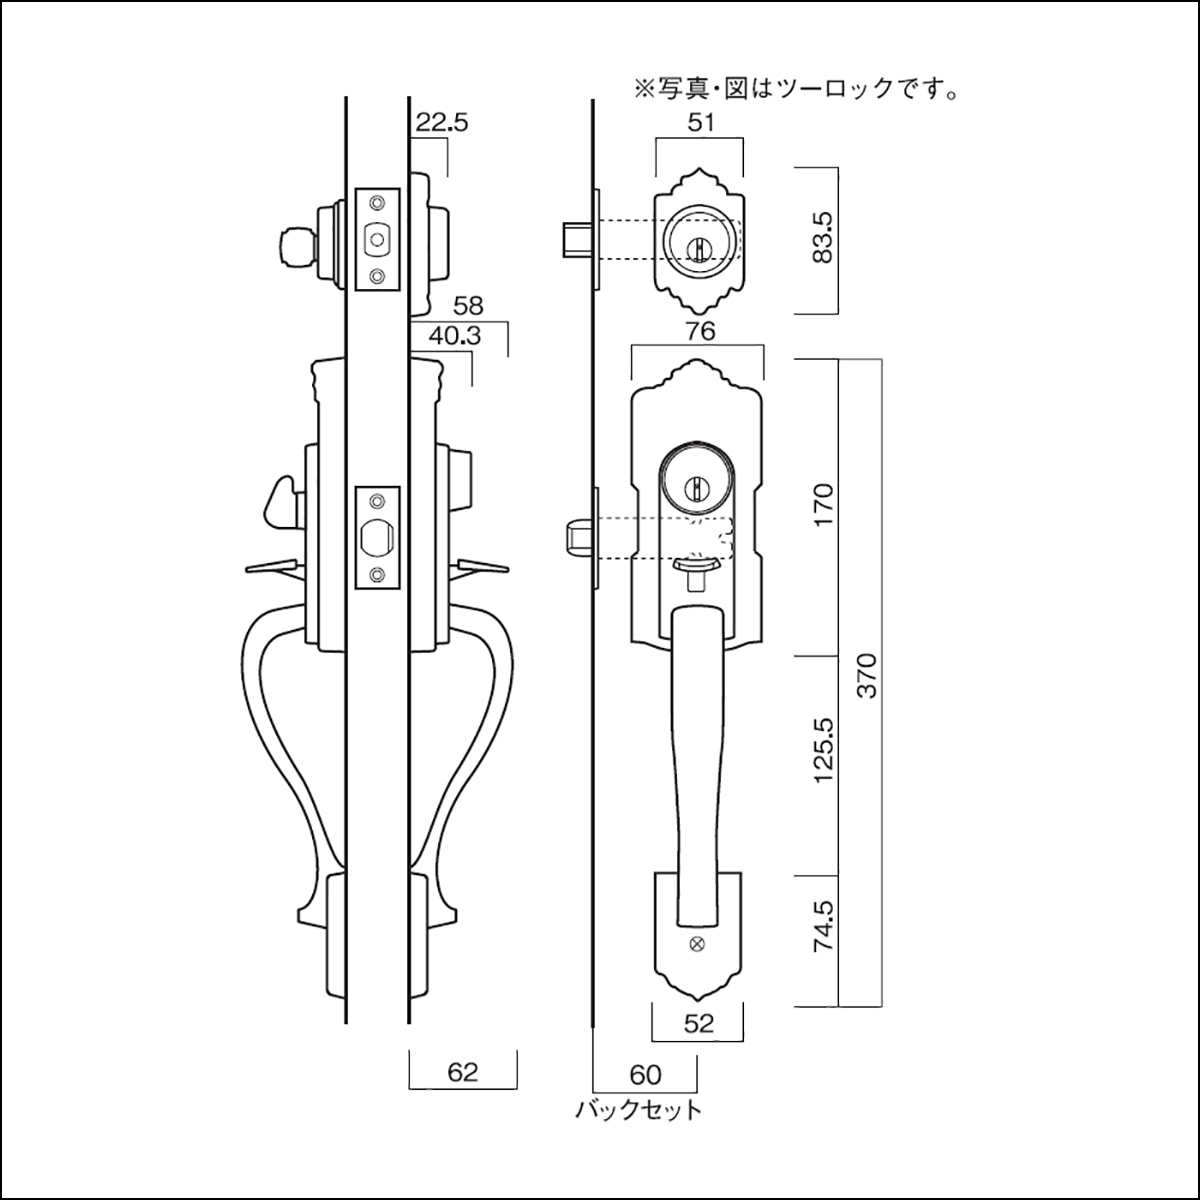 古代,KODAI,コダイ アスカTU-203（ツーロック）装飾玄関錠が激安卸売です。